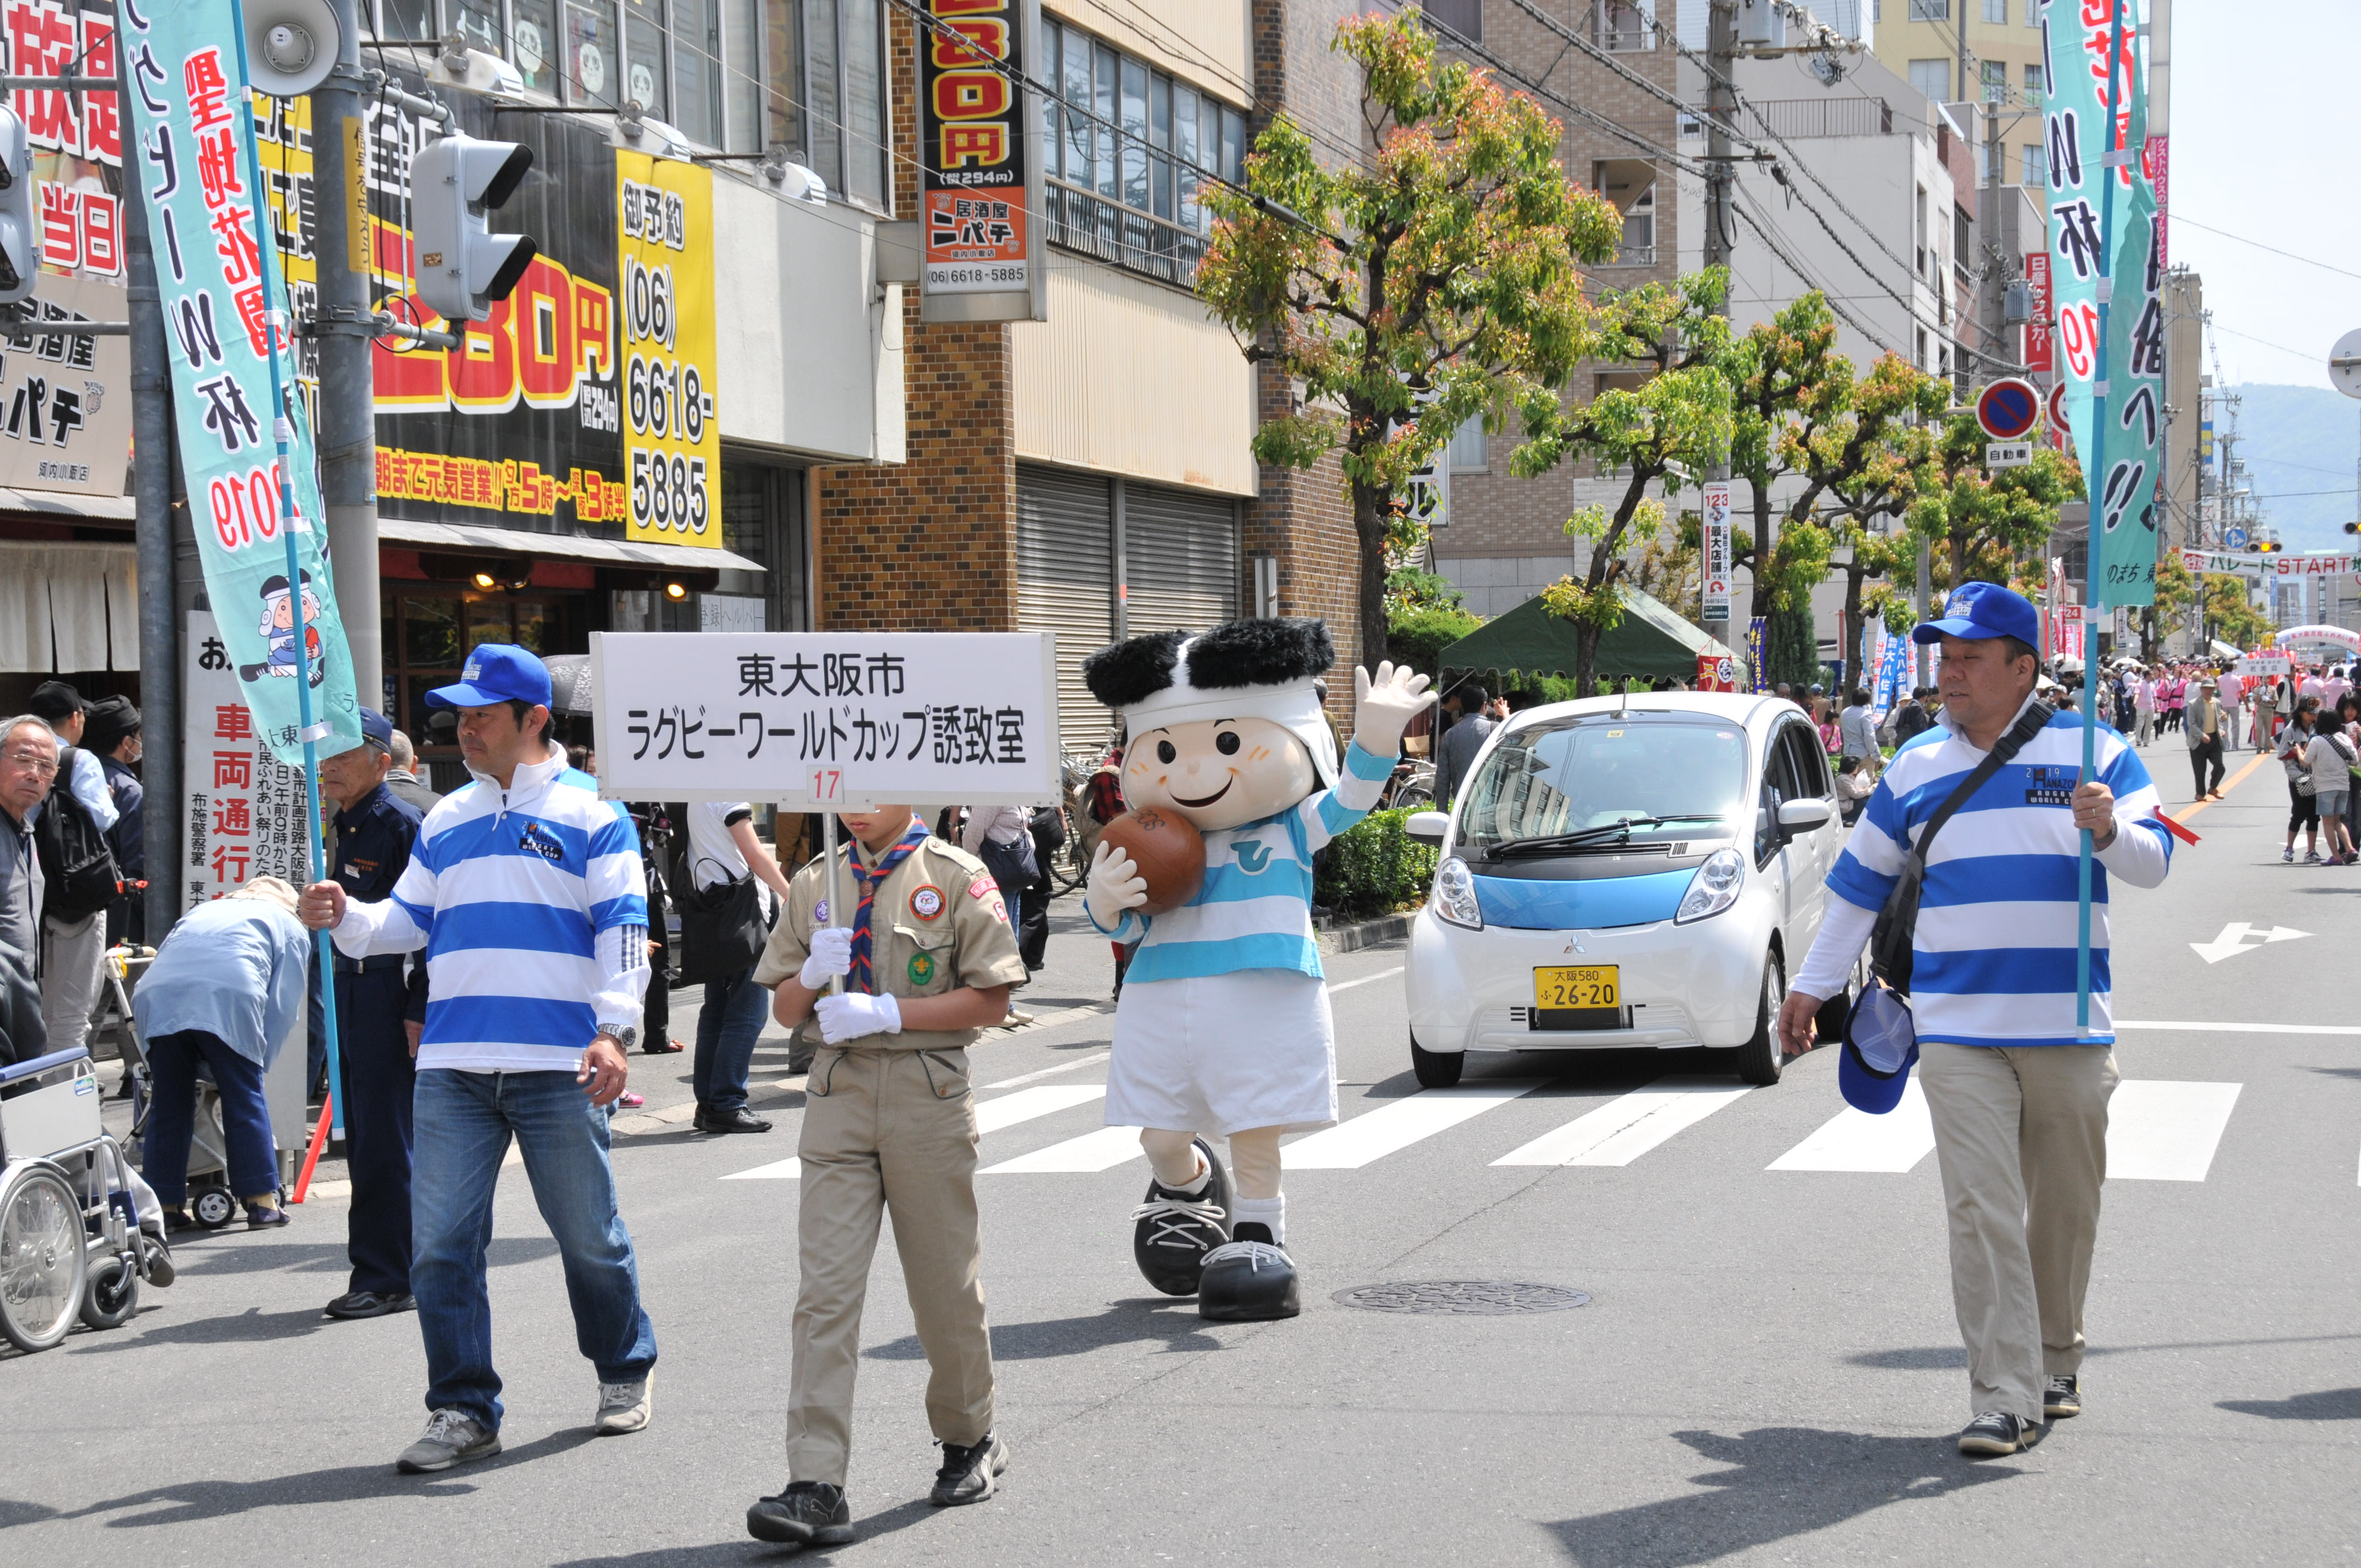 東大阪市民ふれあい祭りのパレードに参加している様子